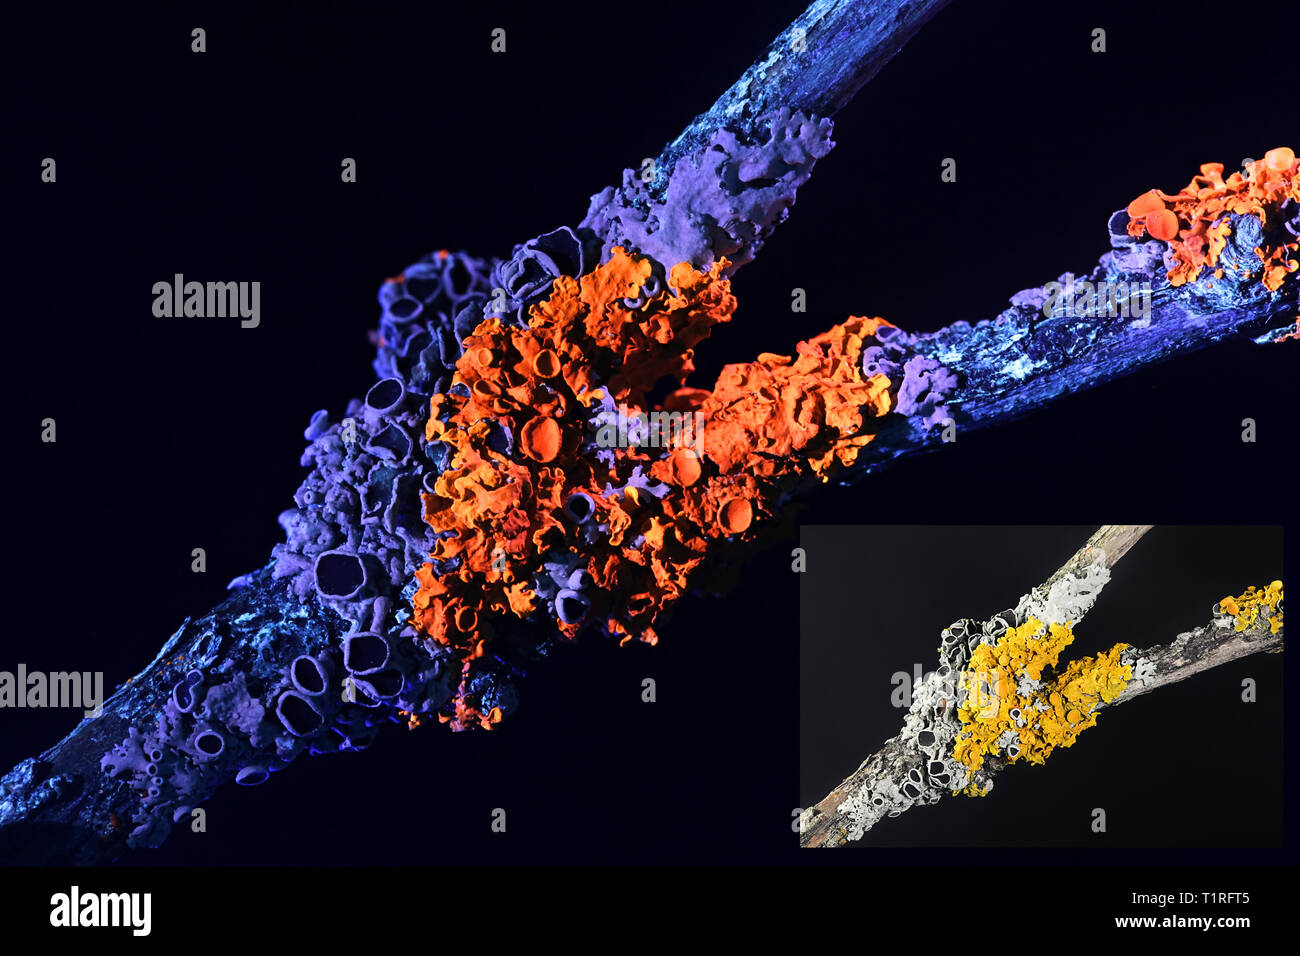 Gemeinsame orange Ufer flechten und hoary Rosette flechten fotografiert im ultravioletten Licht (365 nm). Kleinere Bild im sichtbaren Licht fotografiert. Stockfoto